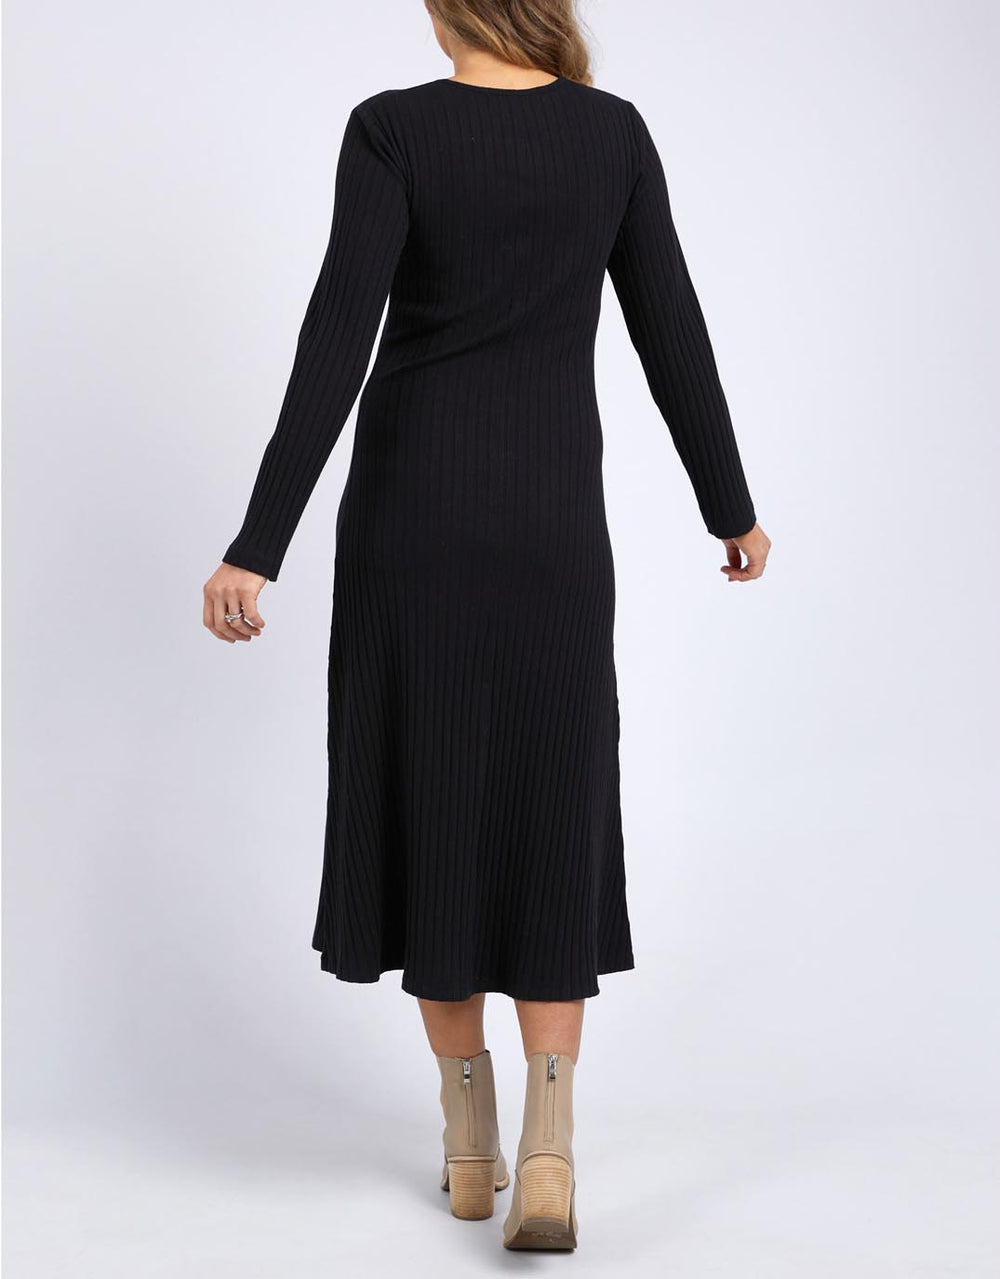 foxwood-huntleigh-rib-dress-black-womens-clothing